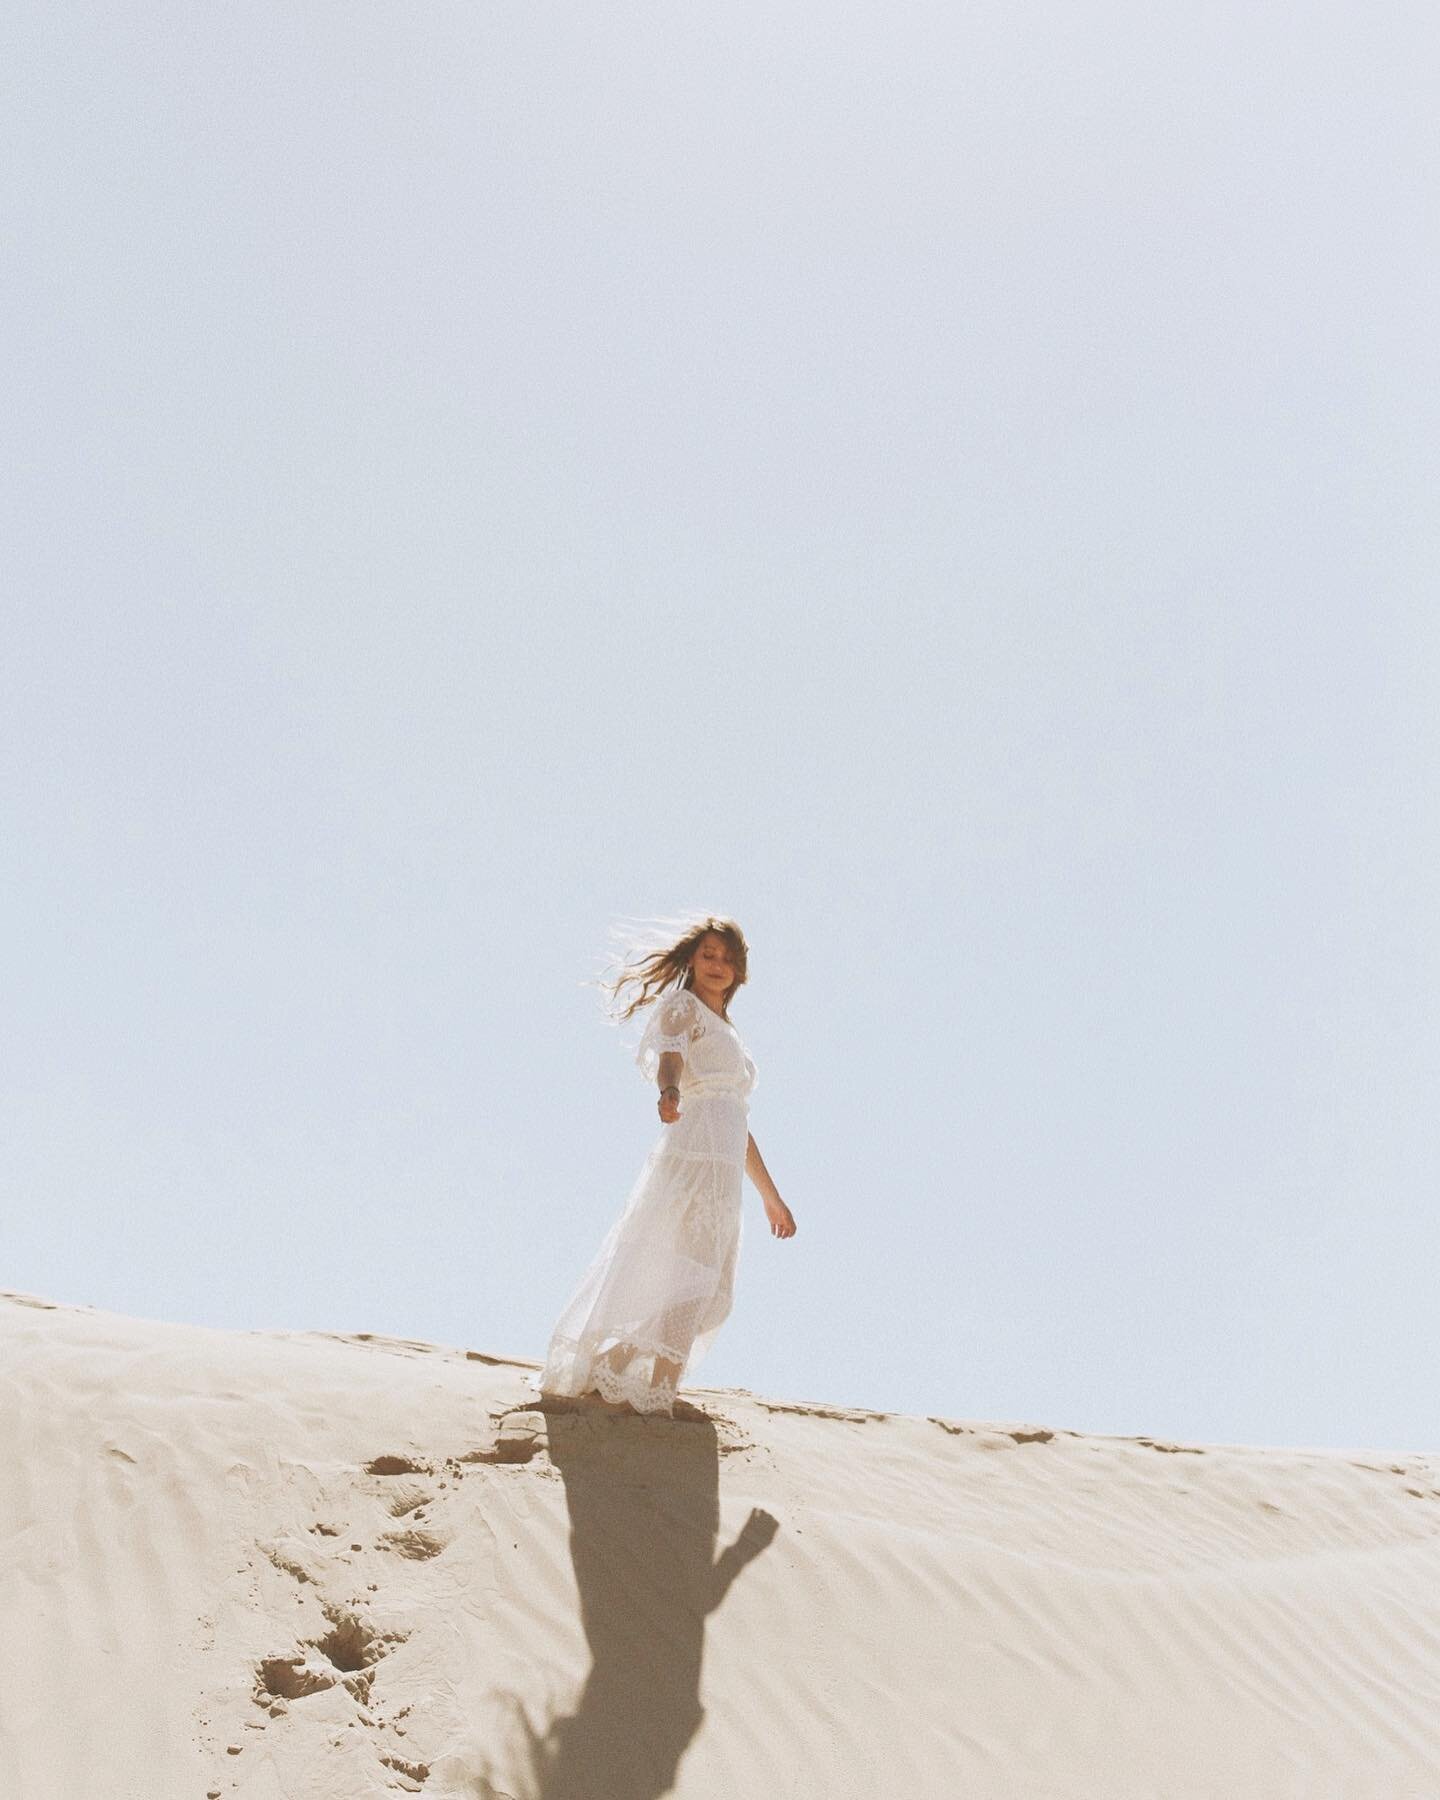 〰️ desert goddess at the Little Sahara 〰️